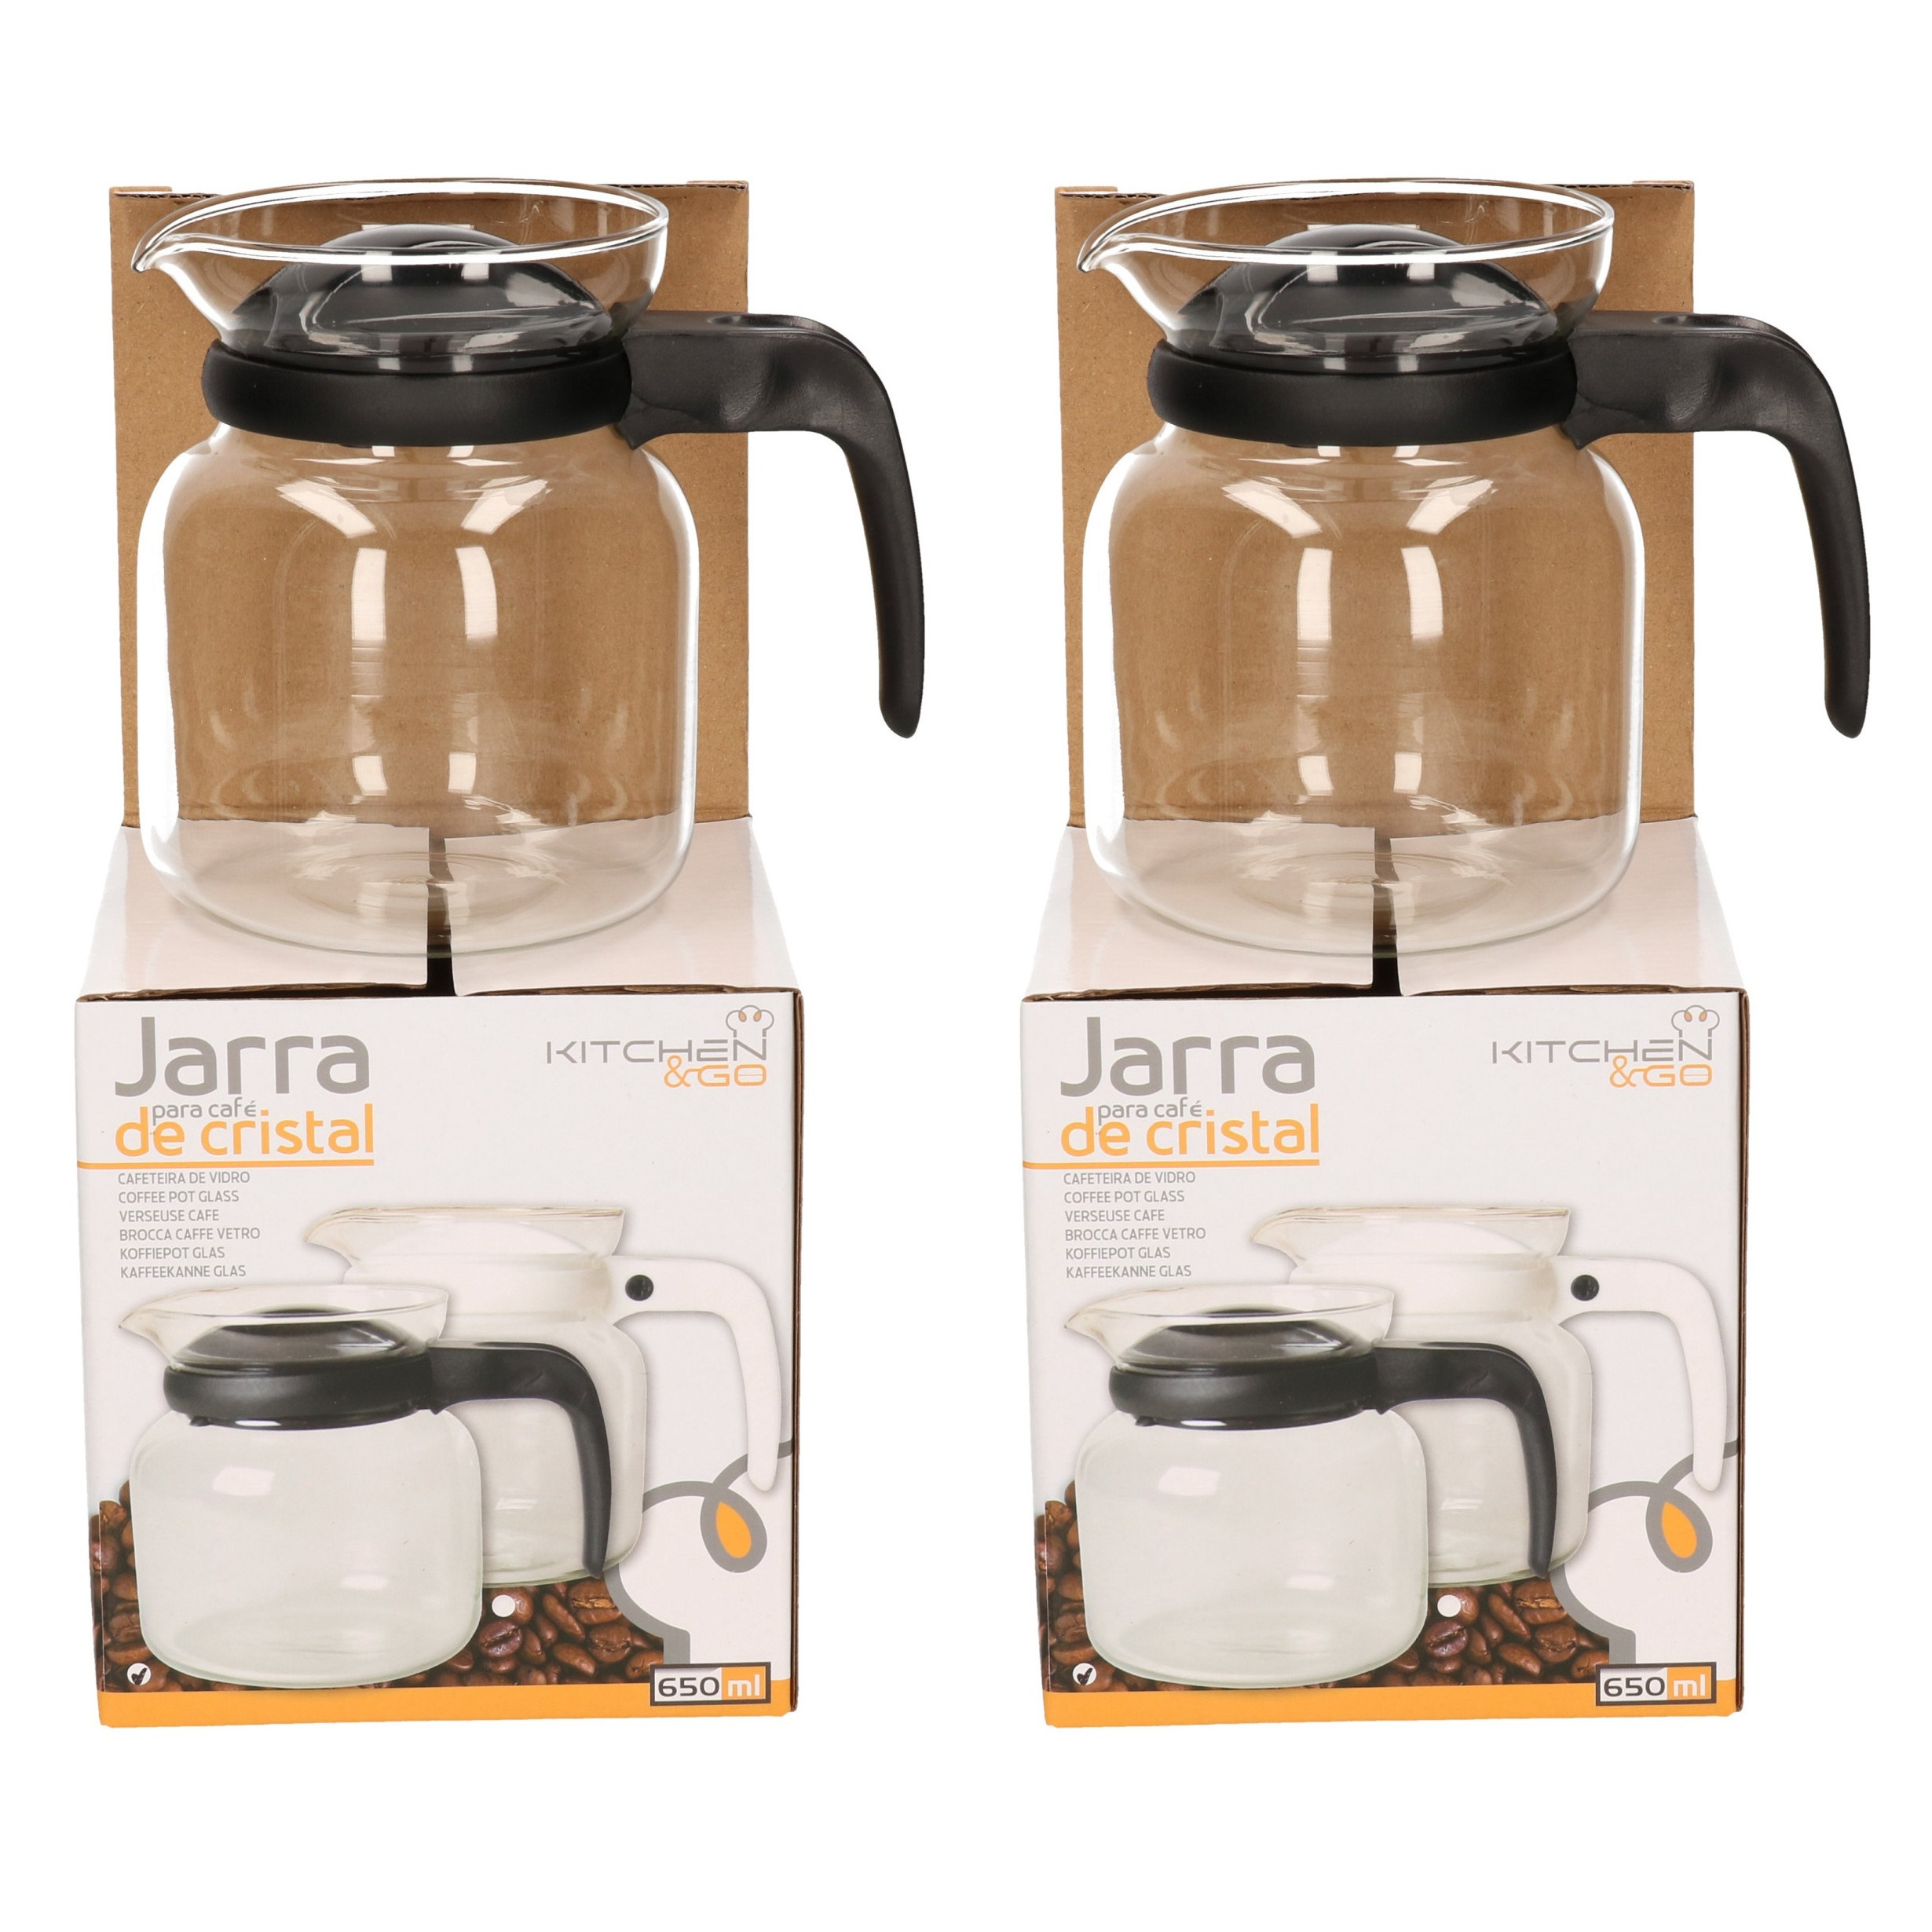 Gerimport 2x stuks theepot/koffiepot met zwarte deksel en handvat 0,65 liter -